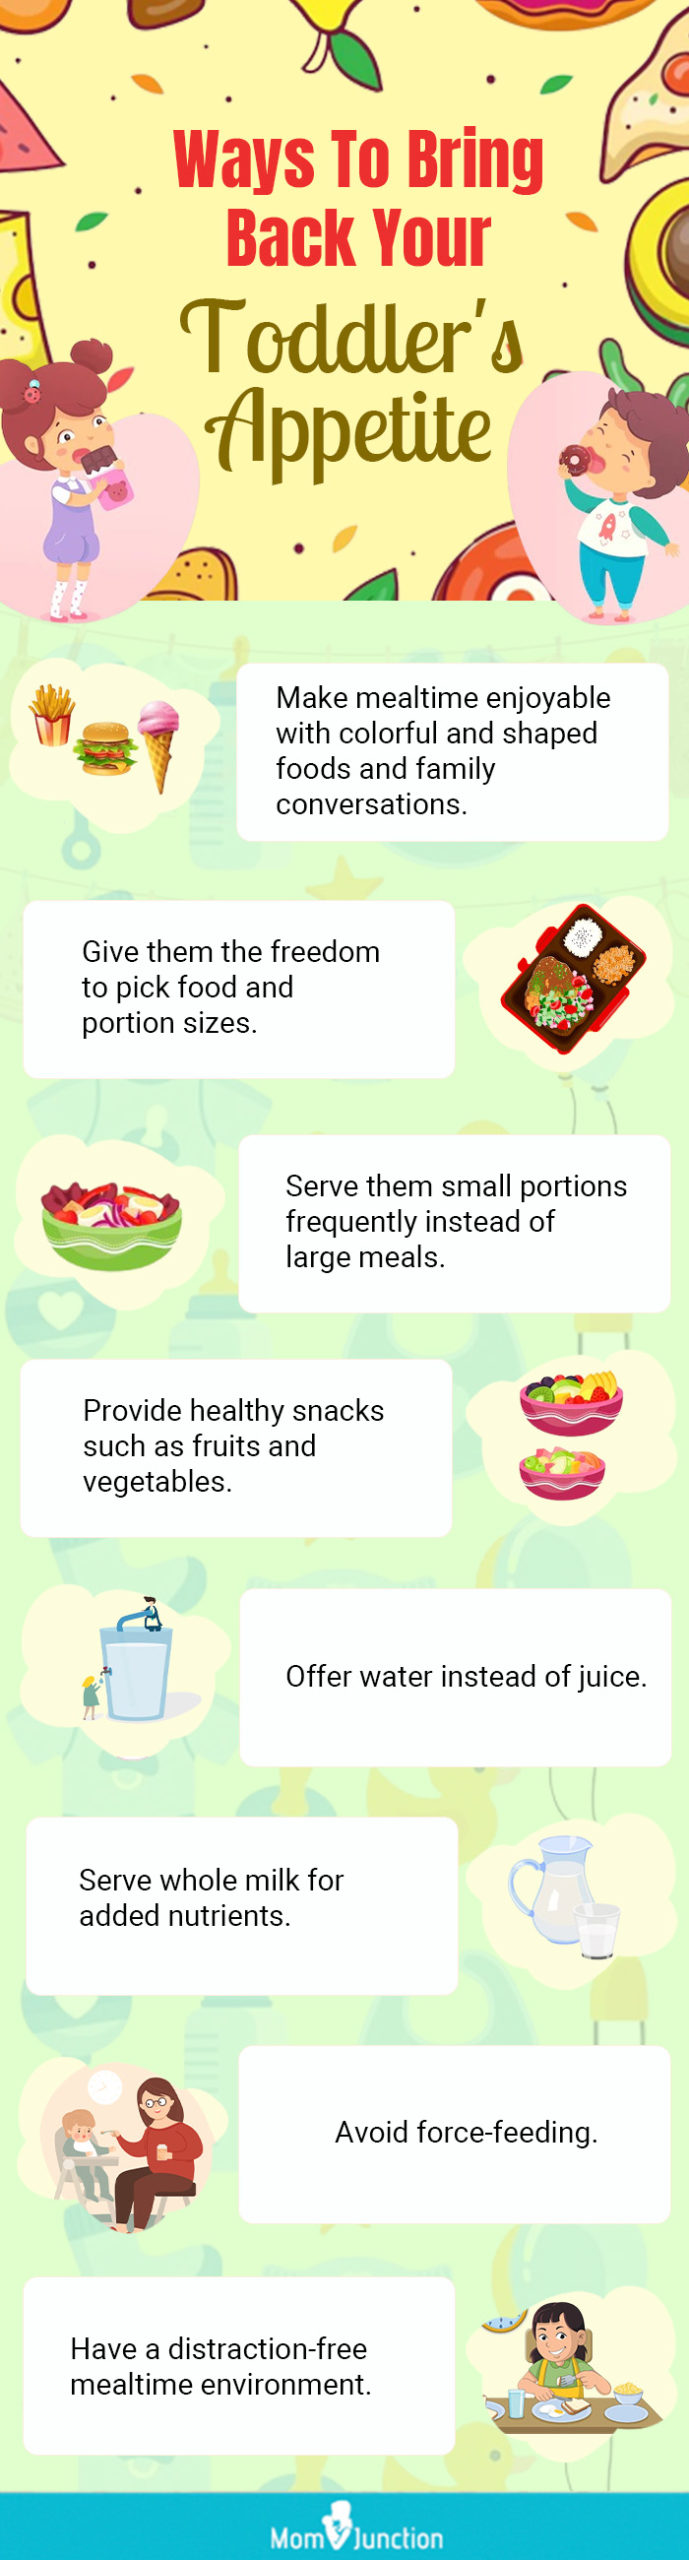 让孩子恢复食欲的方法(信息图)万博体育手机官方网站登录